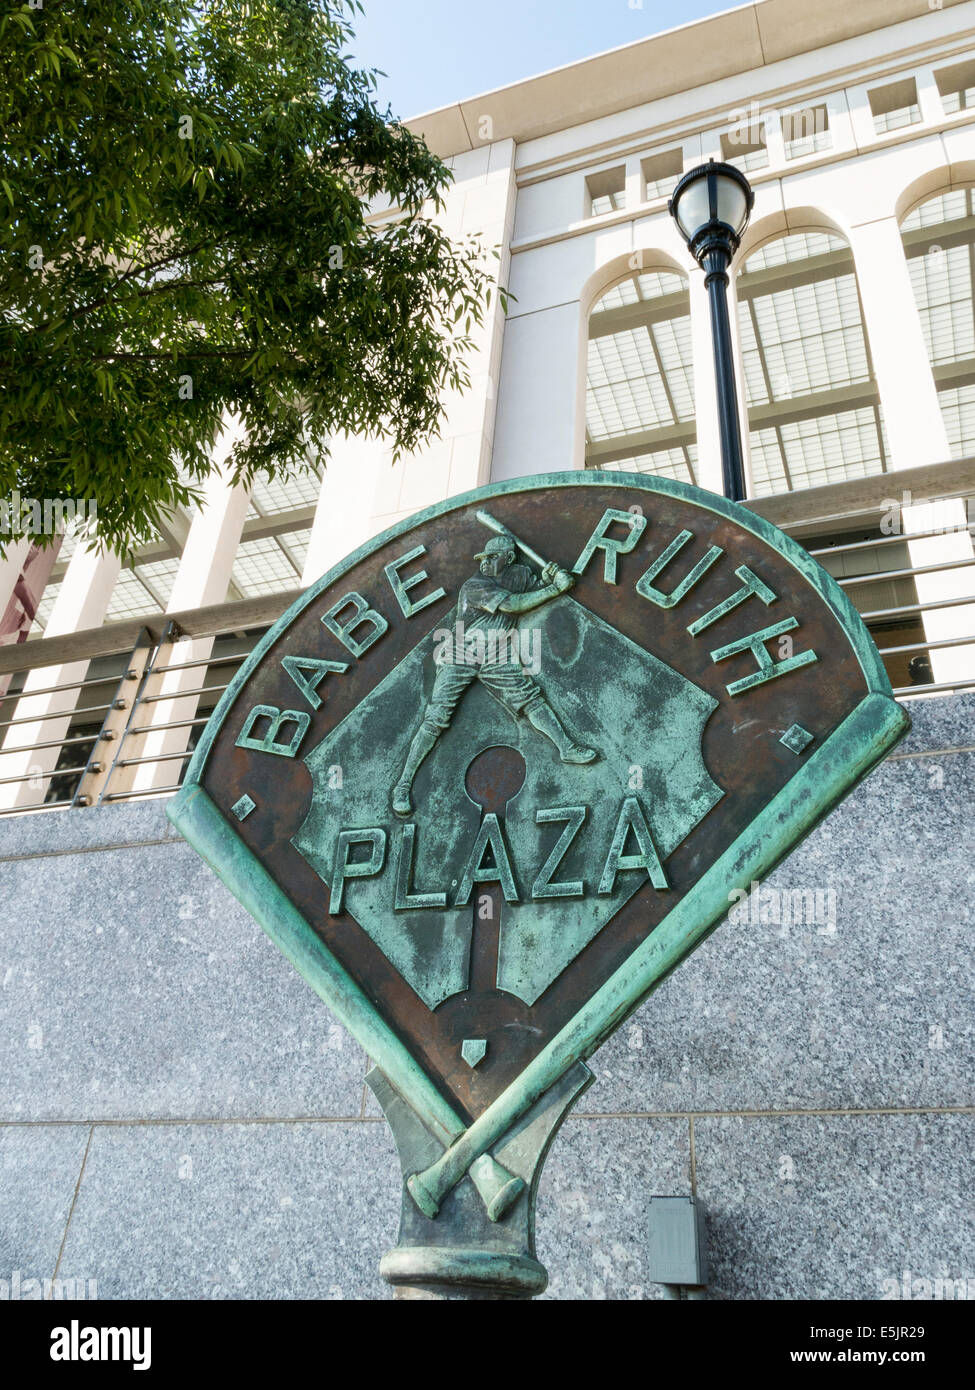 Babe Ruth Plaza at Yankee Stadium, The Bronx, New York Stock Photo